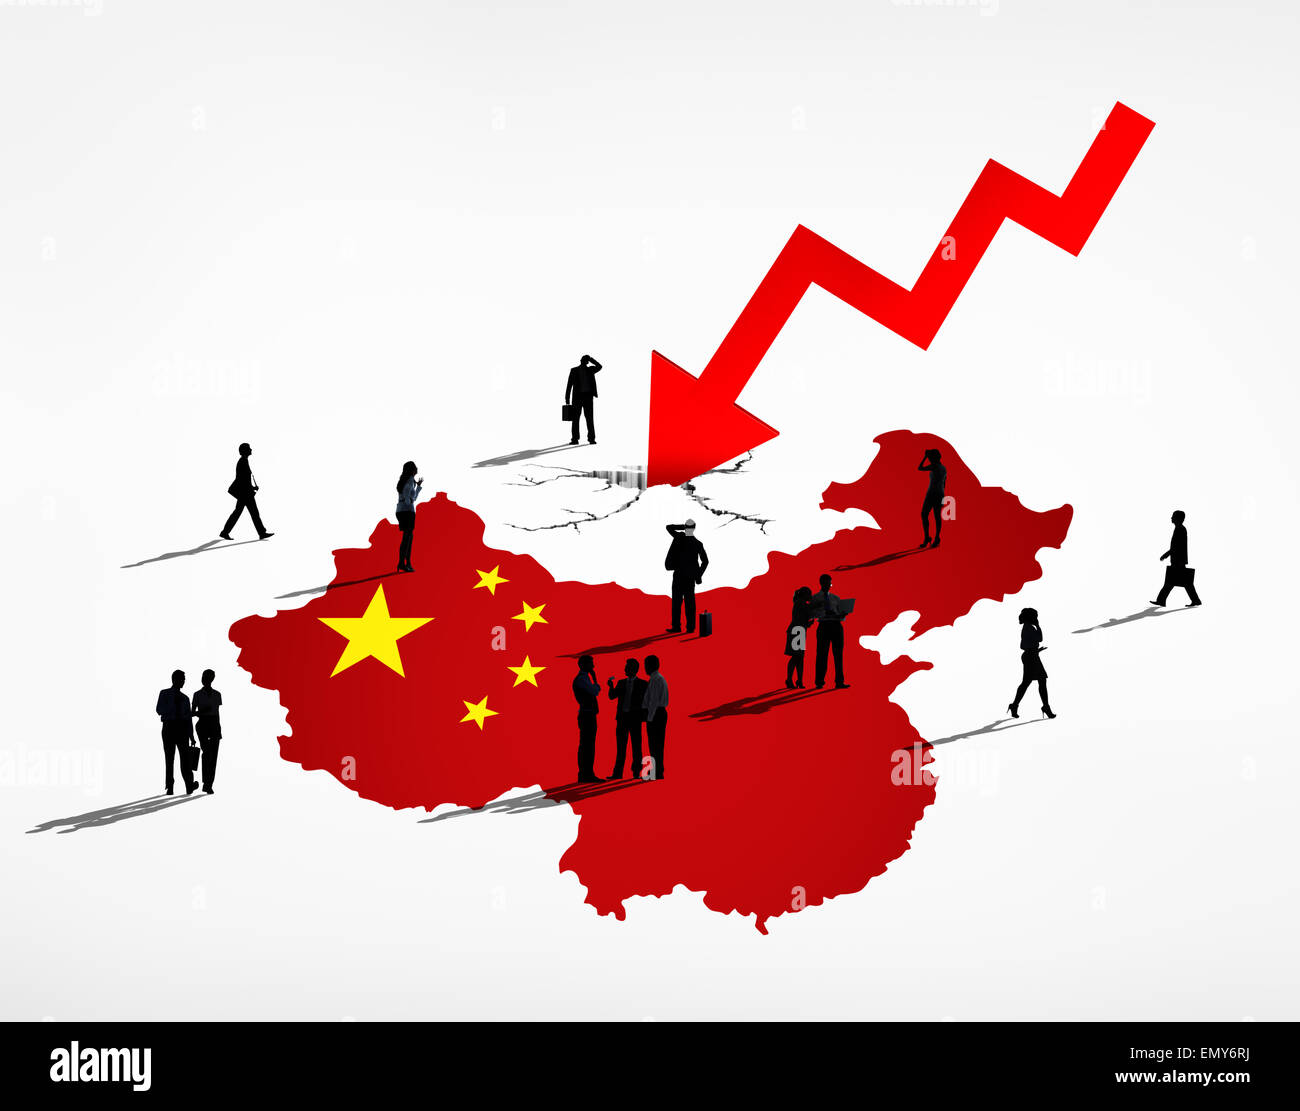 Китайская модель рынка. Экономика Китая. Китай кризис. Планирование в Китае. Китайский экономический кризис.